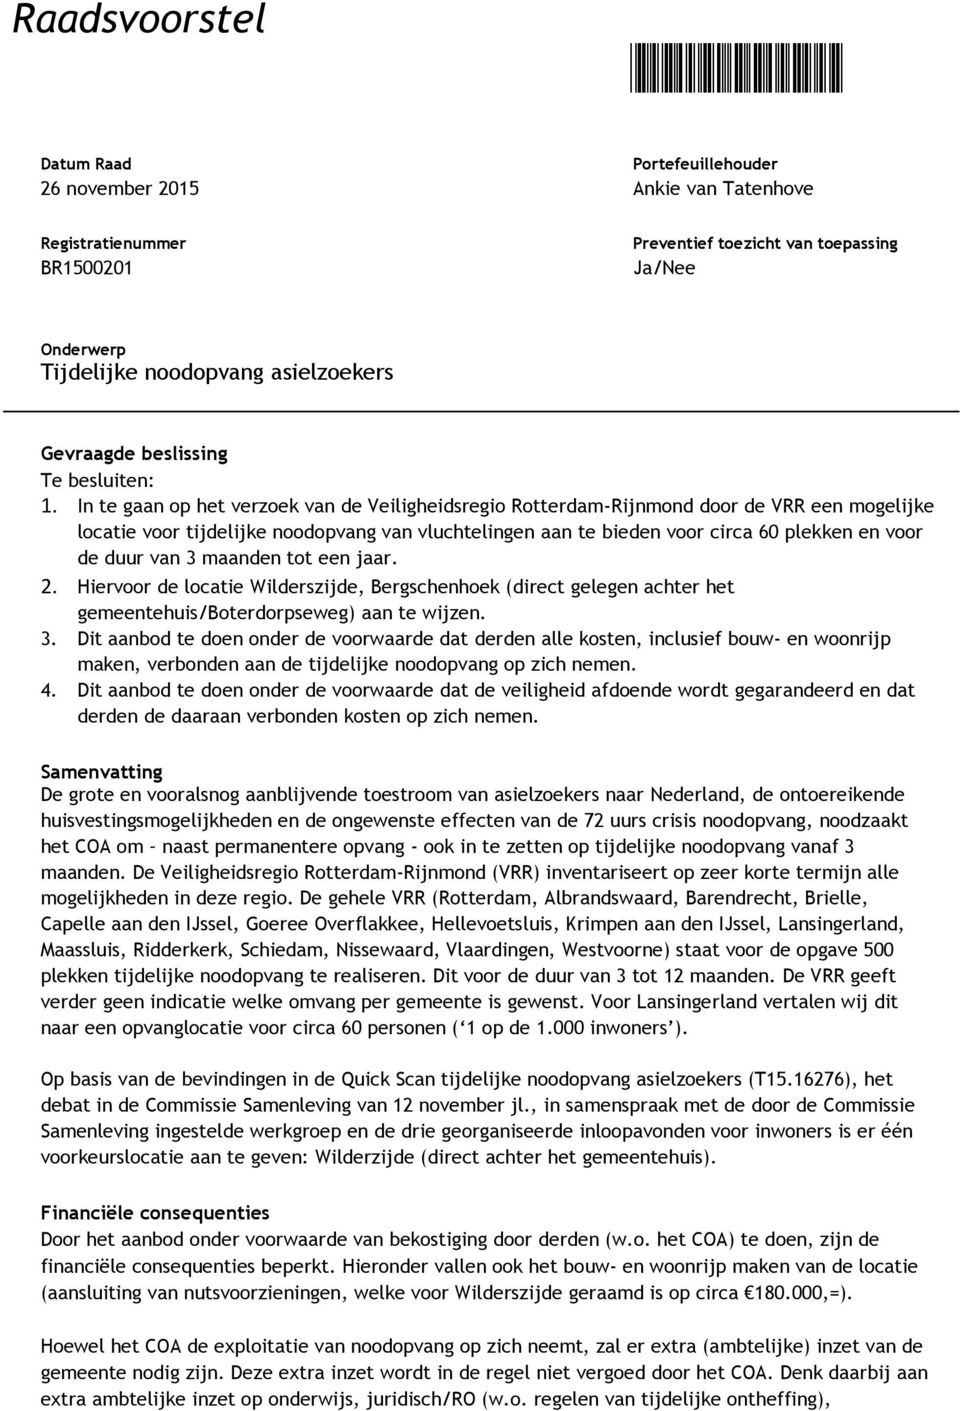 In te gaan op het verzoek van de Veiligheidsregio Rotterdam-Rijnmond door de VRR een mogelijke locatie voor tijdelijke noodopvang van vluchtelingen aan te bieden voor circa 60 plekken en voor de duur